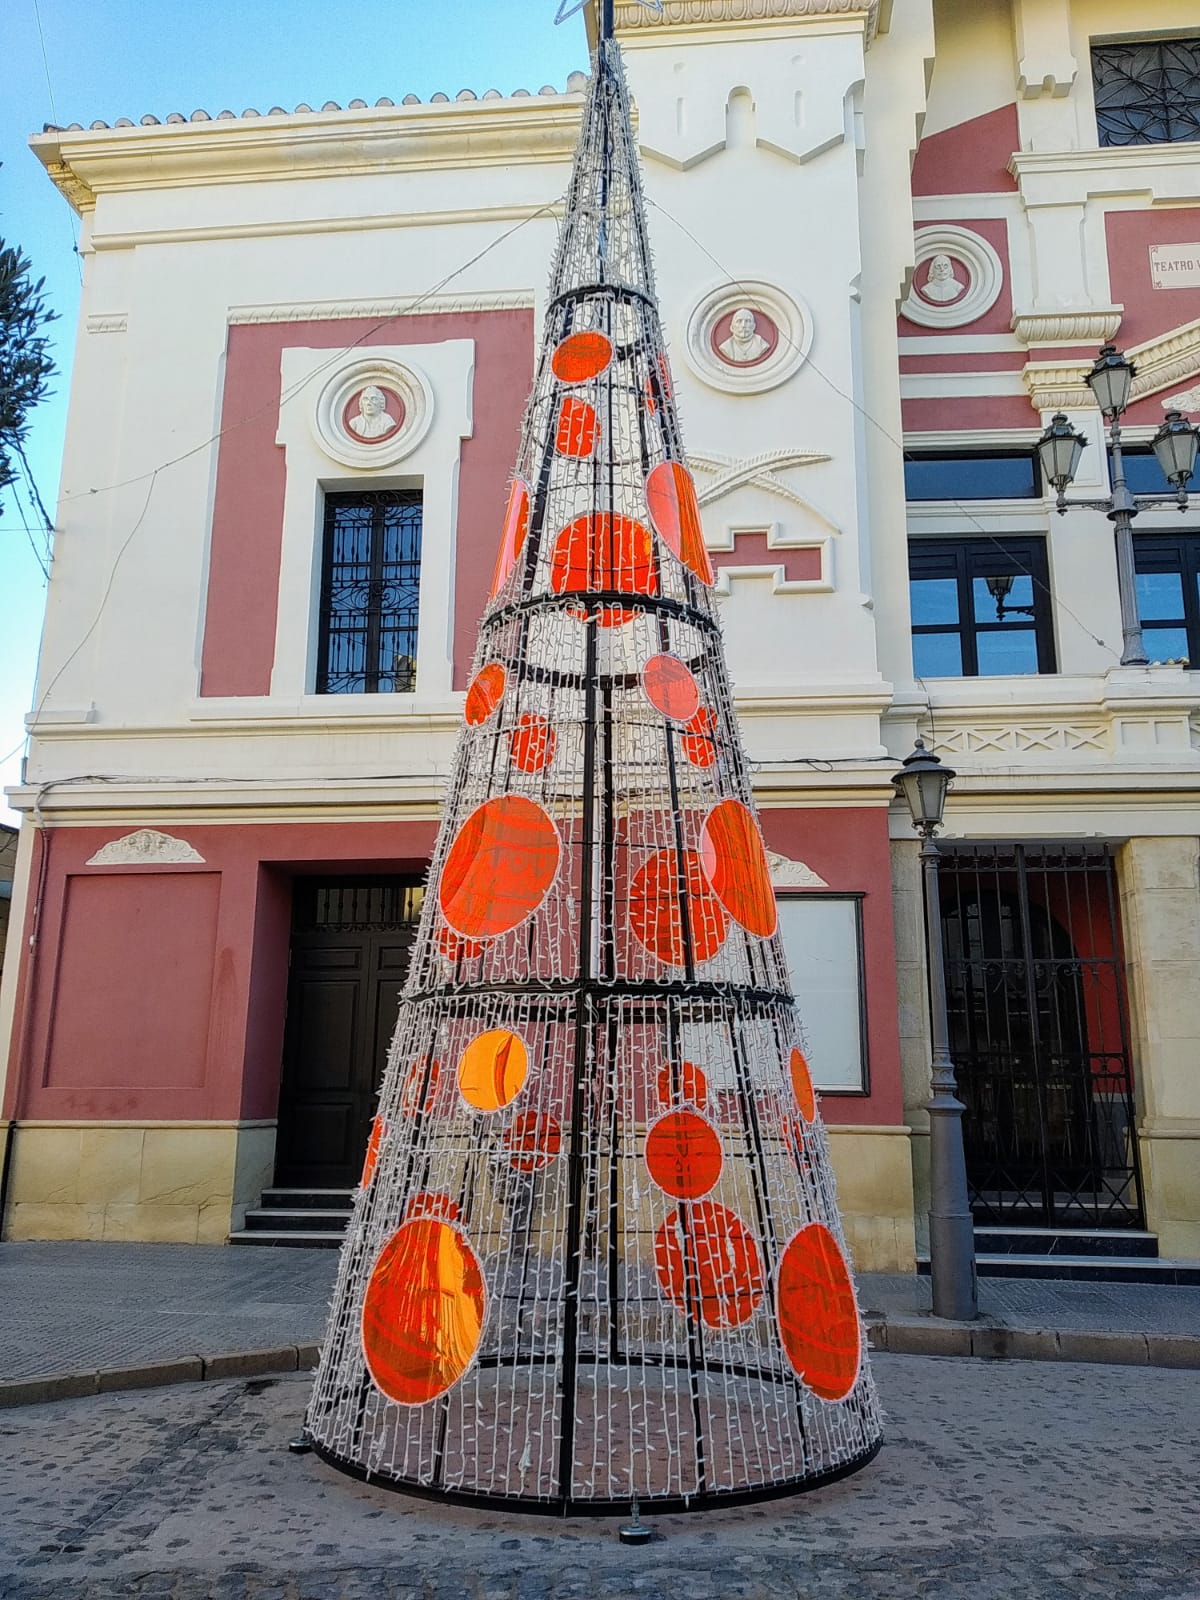 La alcaldesa prende la luz de la iluminación navideña y del árbol en el Teatro Vico